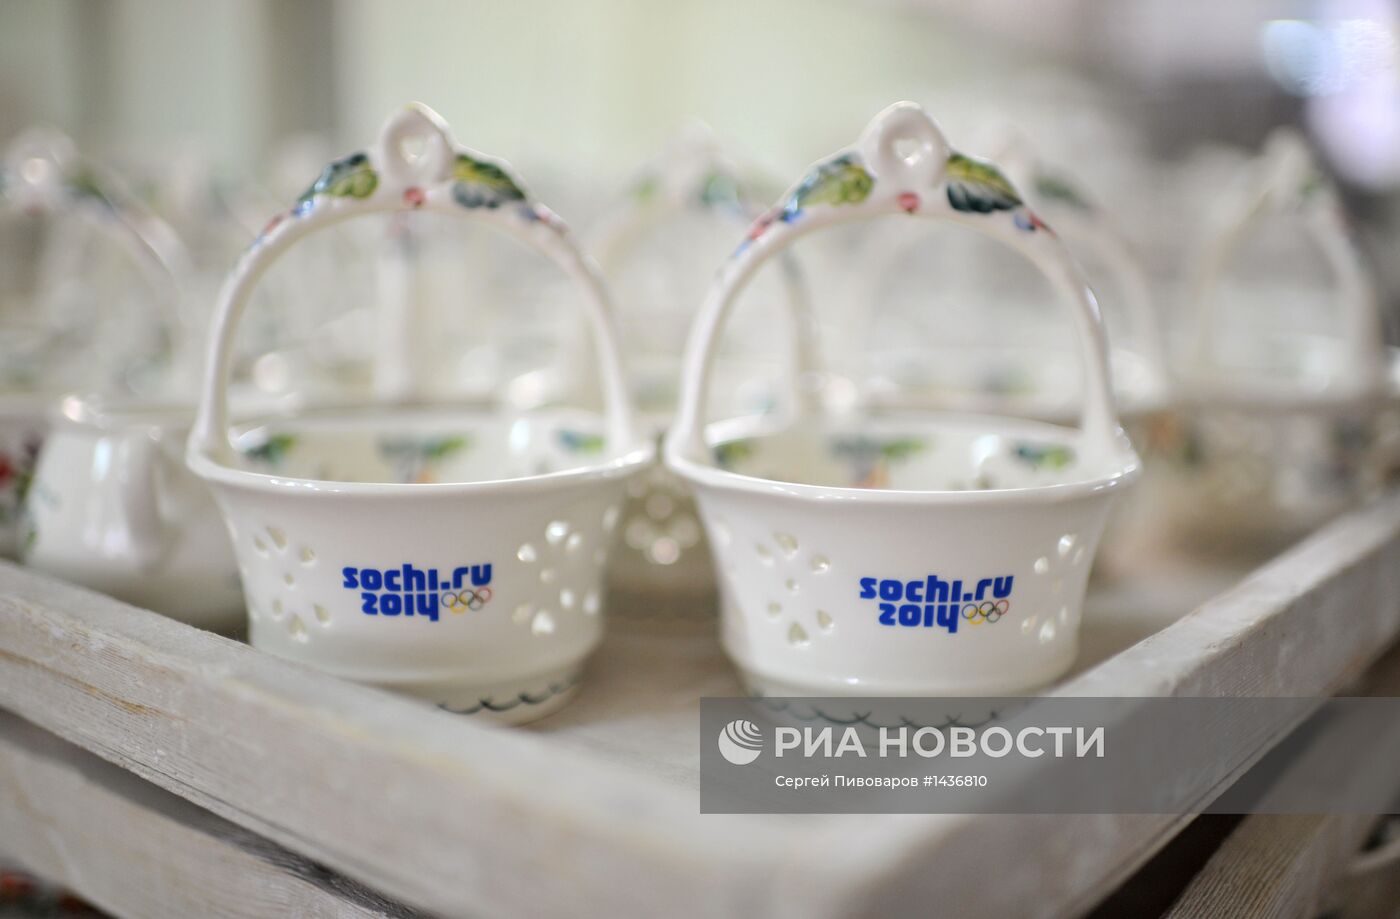 Производство сувениров из керамики с символикой "Сочи 2014"